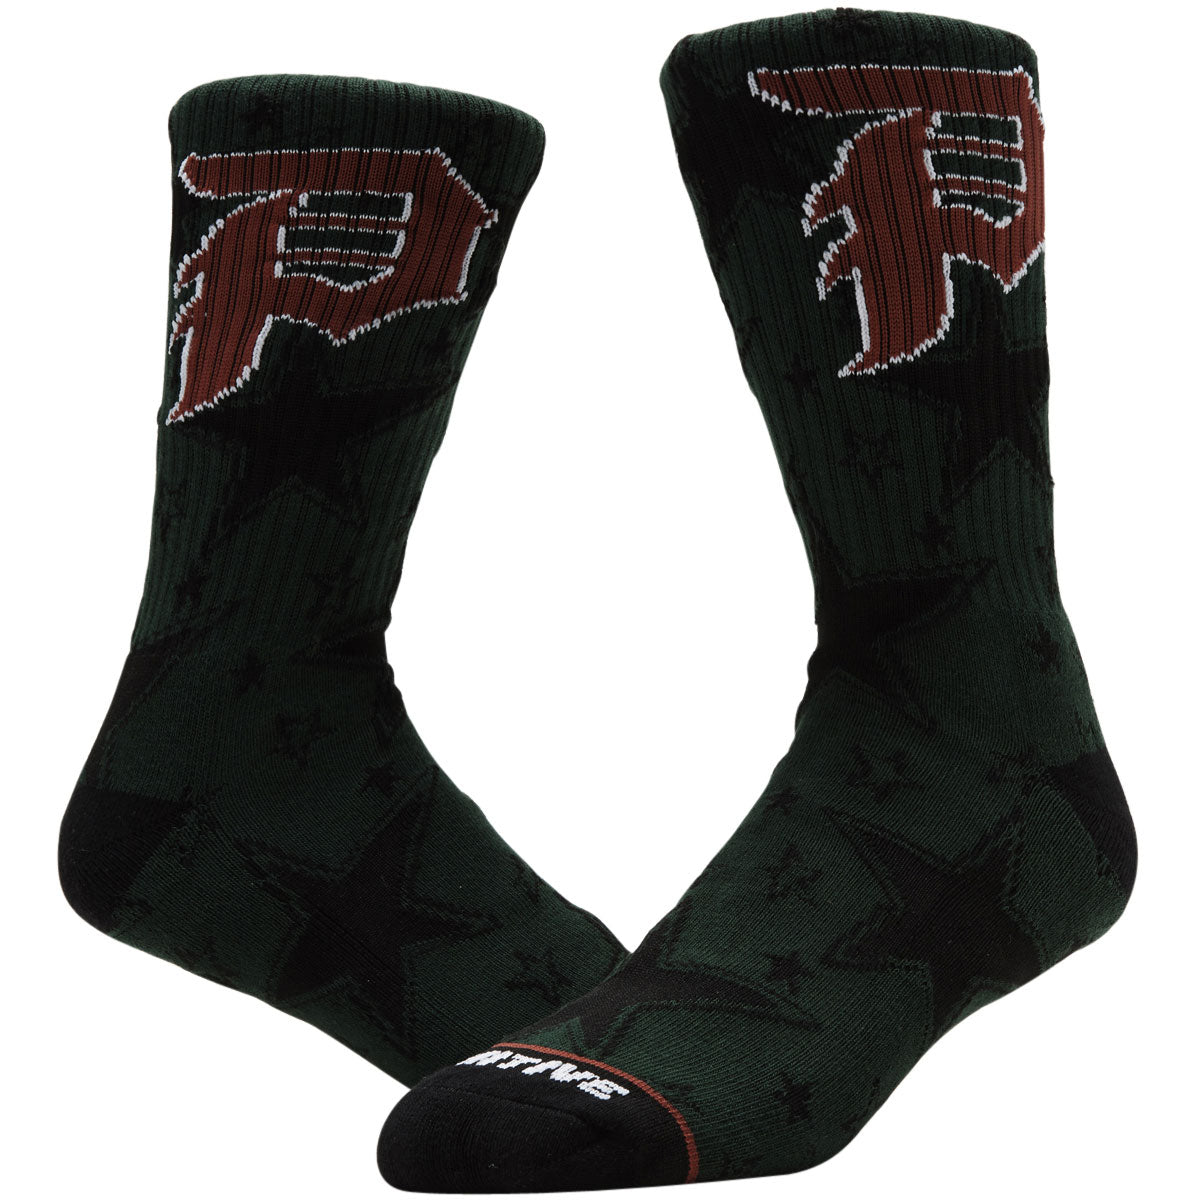 Primitive All-Star Socks - Green image 2